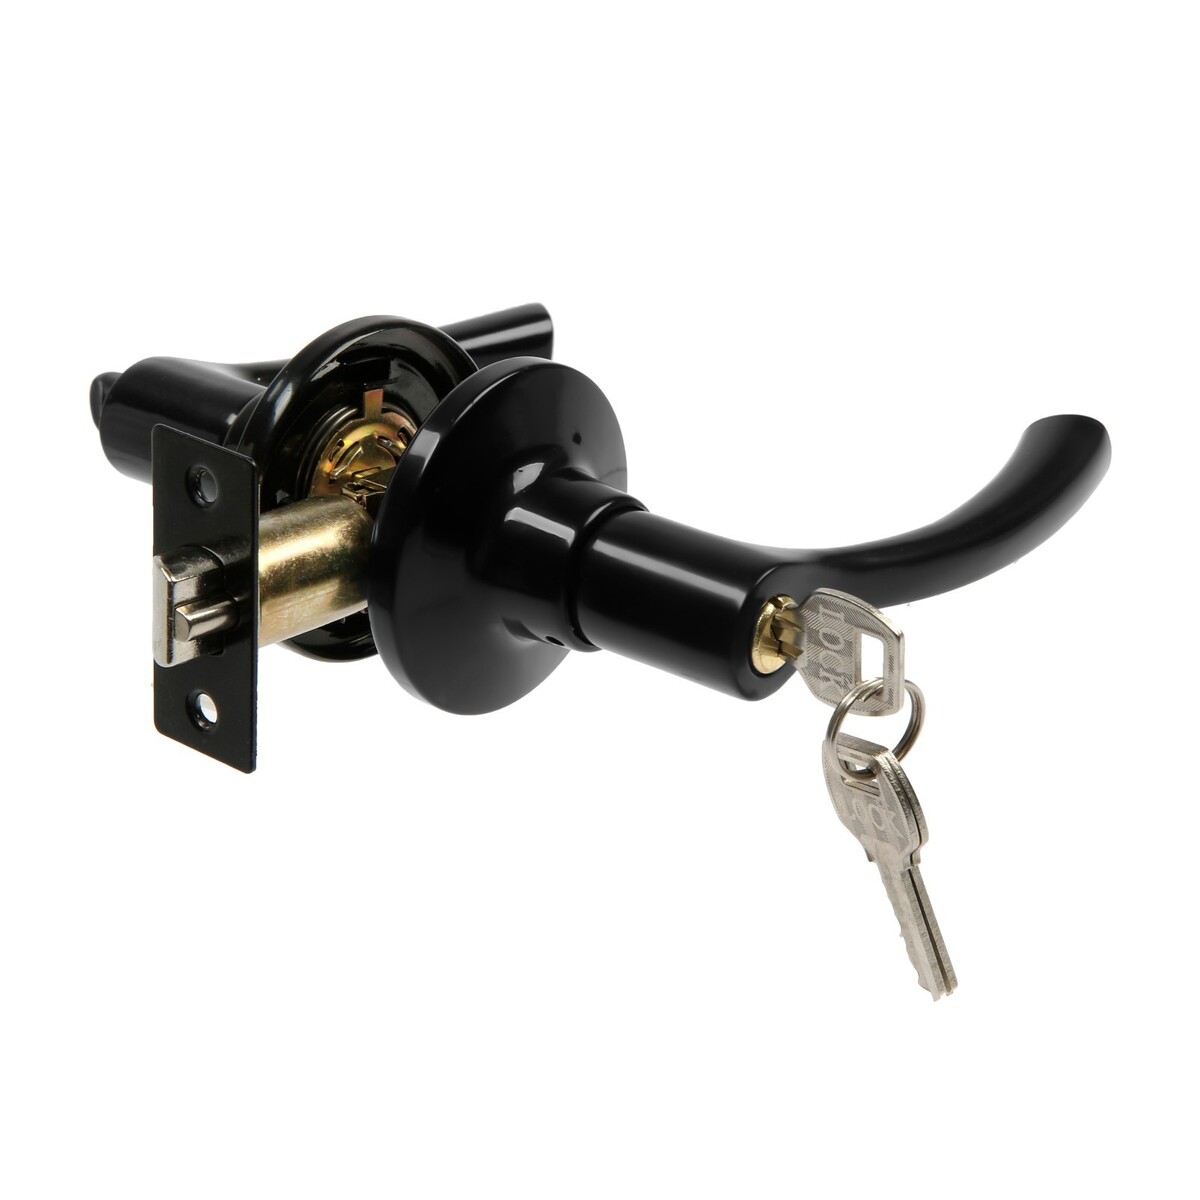 Защелка (мод.3186), межкомнатная, фиксатор, 3 ключа, цвет глянцевый черный защелка мод 3186 межкомнатная фиксатор 3 ключа медь